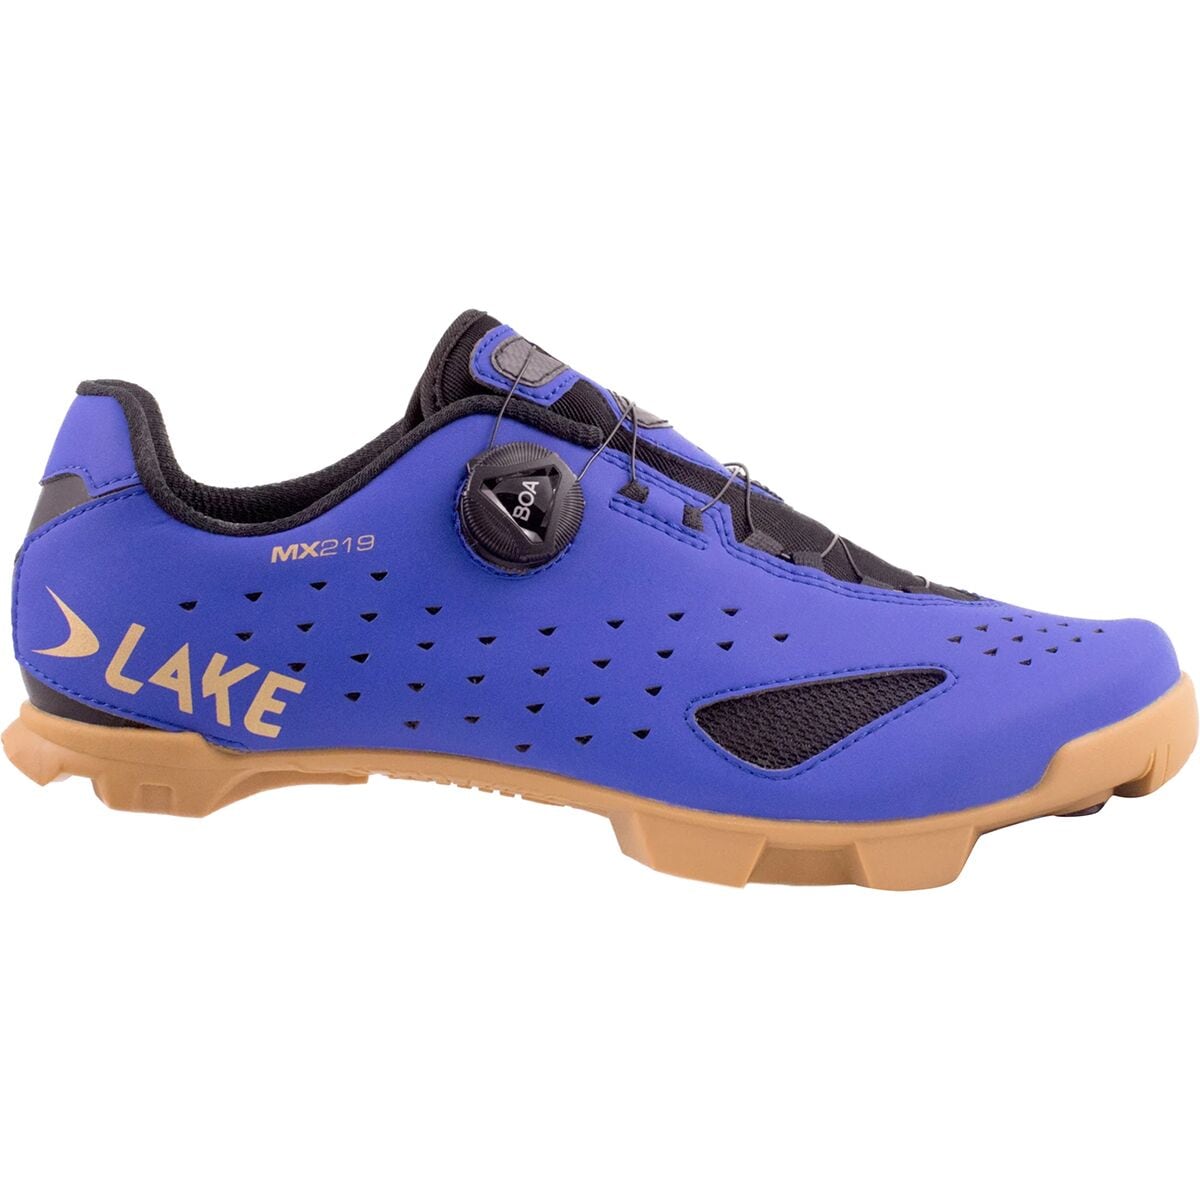 Lake MX219 Wide Cycling Shoe - Men's